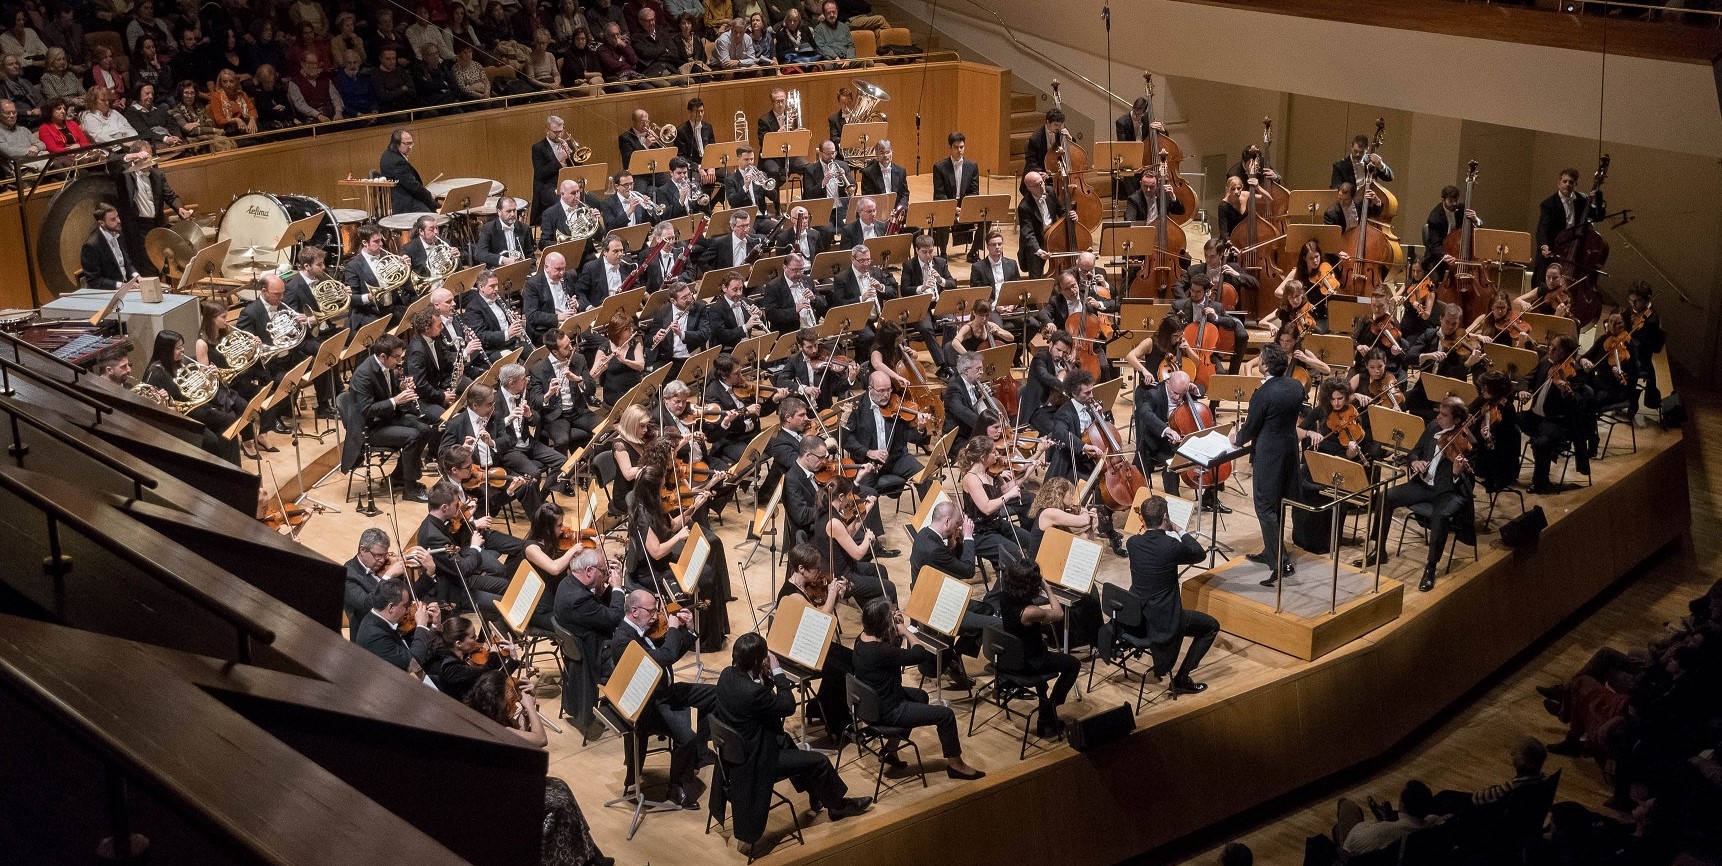 La Orquesta Nacional de España presenta obras de Beethoven, Mozart y Dvořák en el Auditorio de Torrevieja